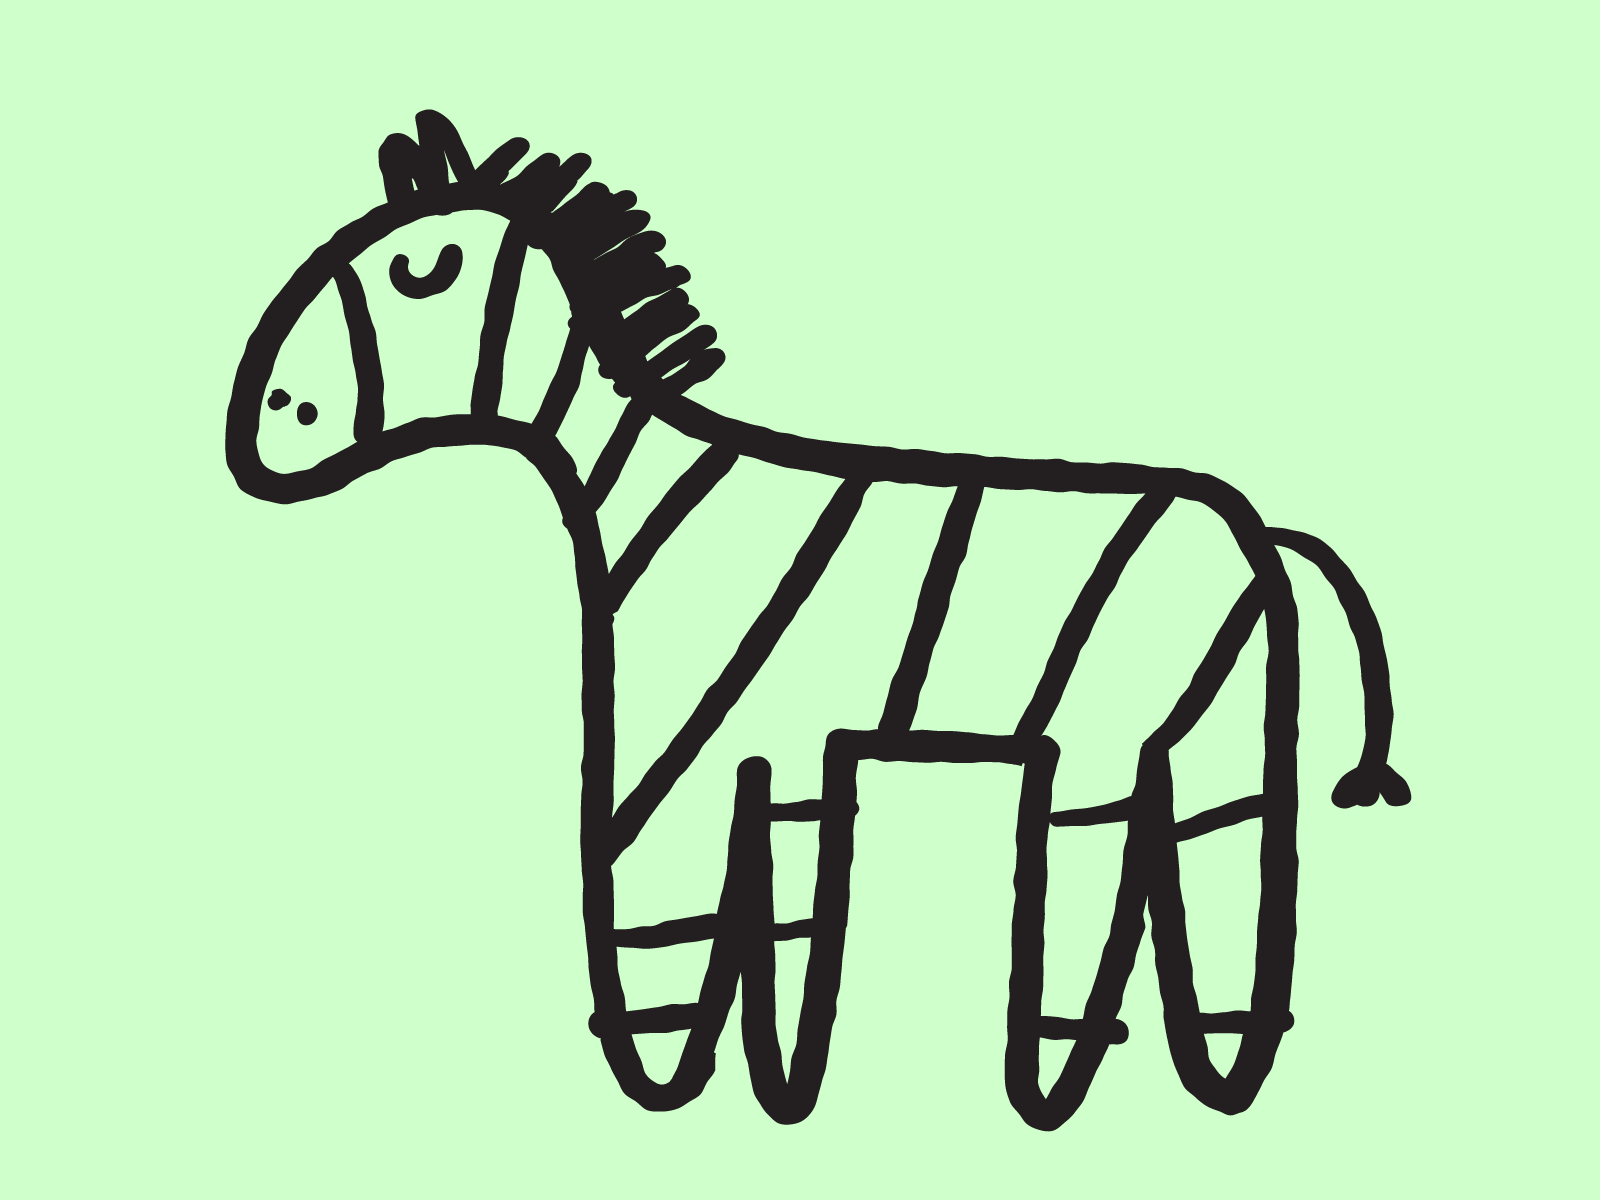 Zebra animal art branding children design flat icon illustration kid logo mark sticker symbol ui vector zebra